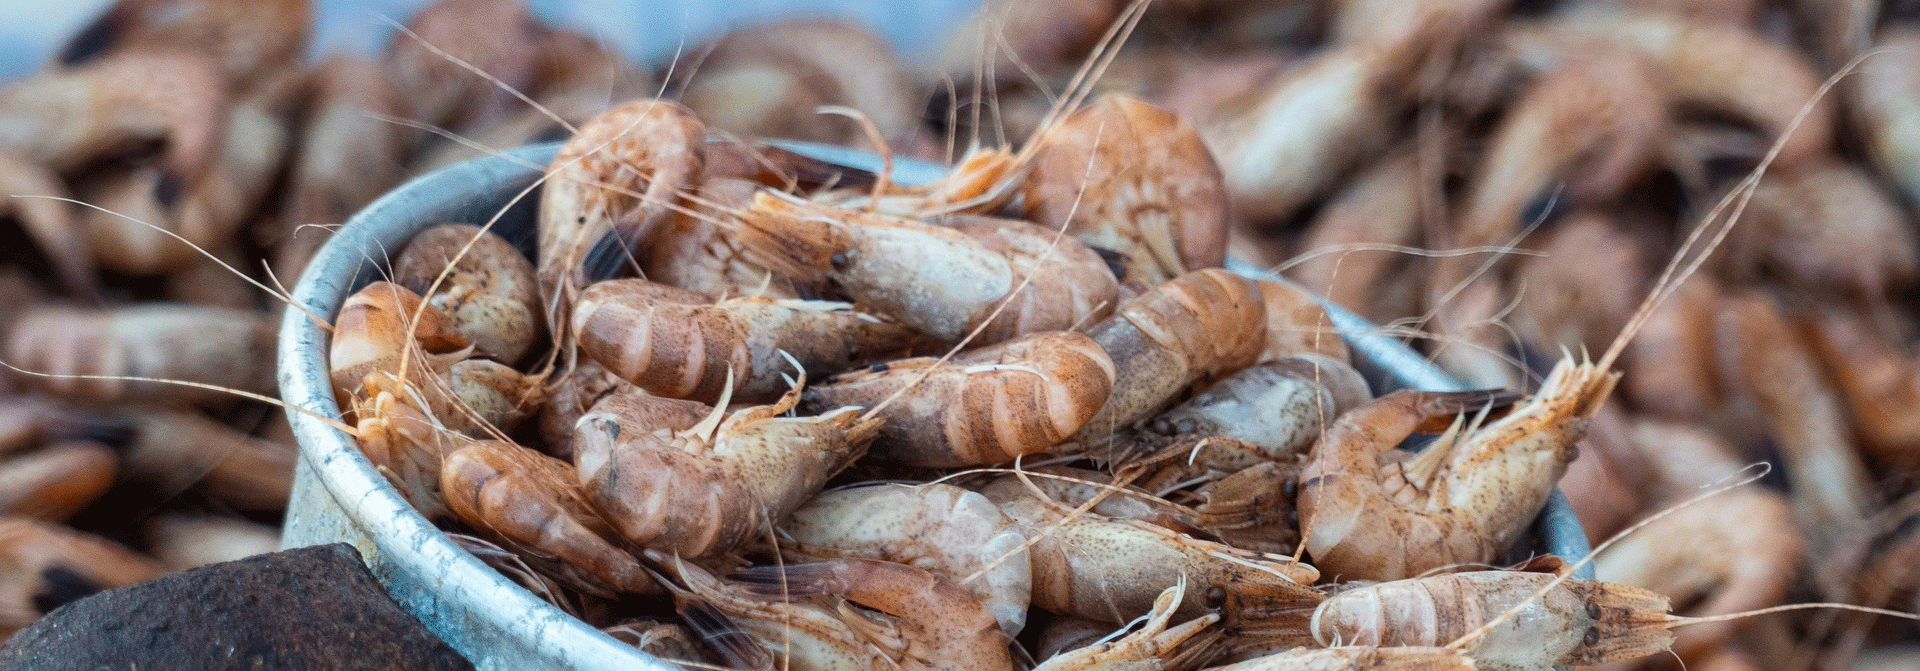 Krabben und Garnelnen Fischleckereinen in Cuxhaven